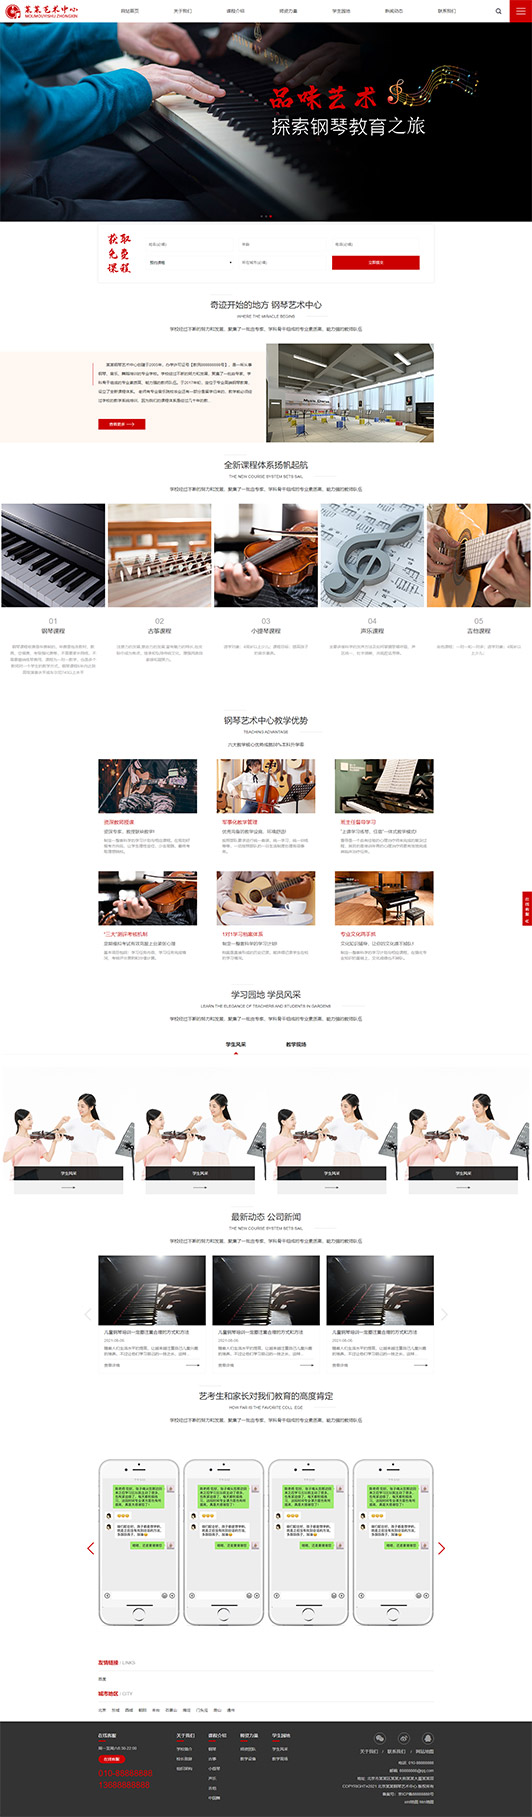 巴中钢琴艺术培训公司响应式企业网站